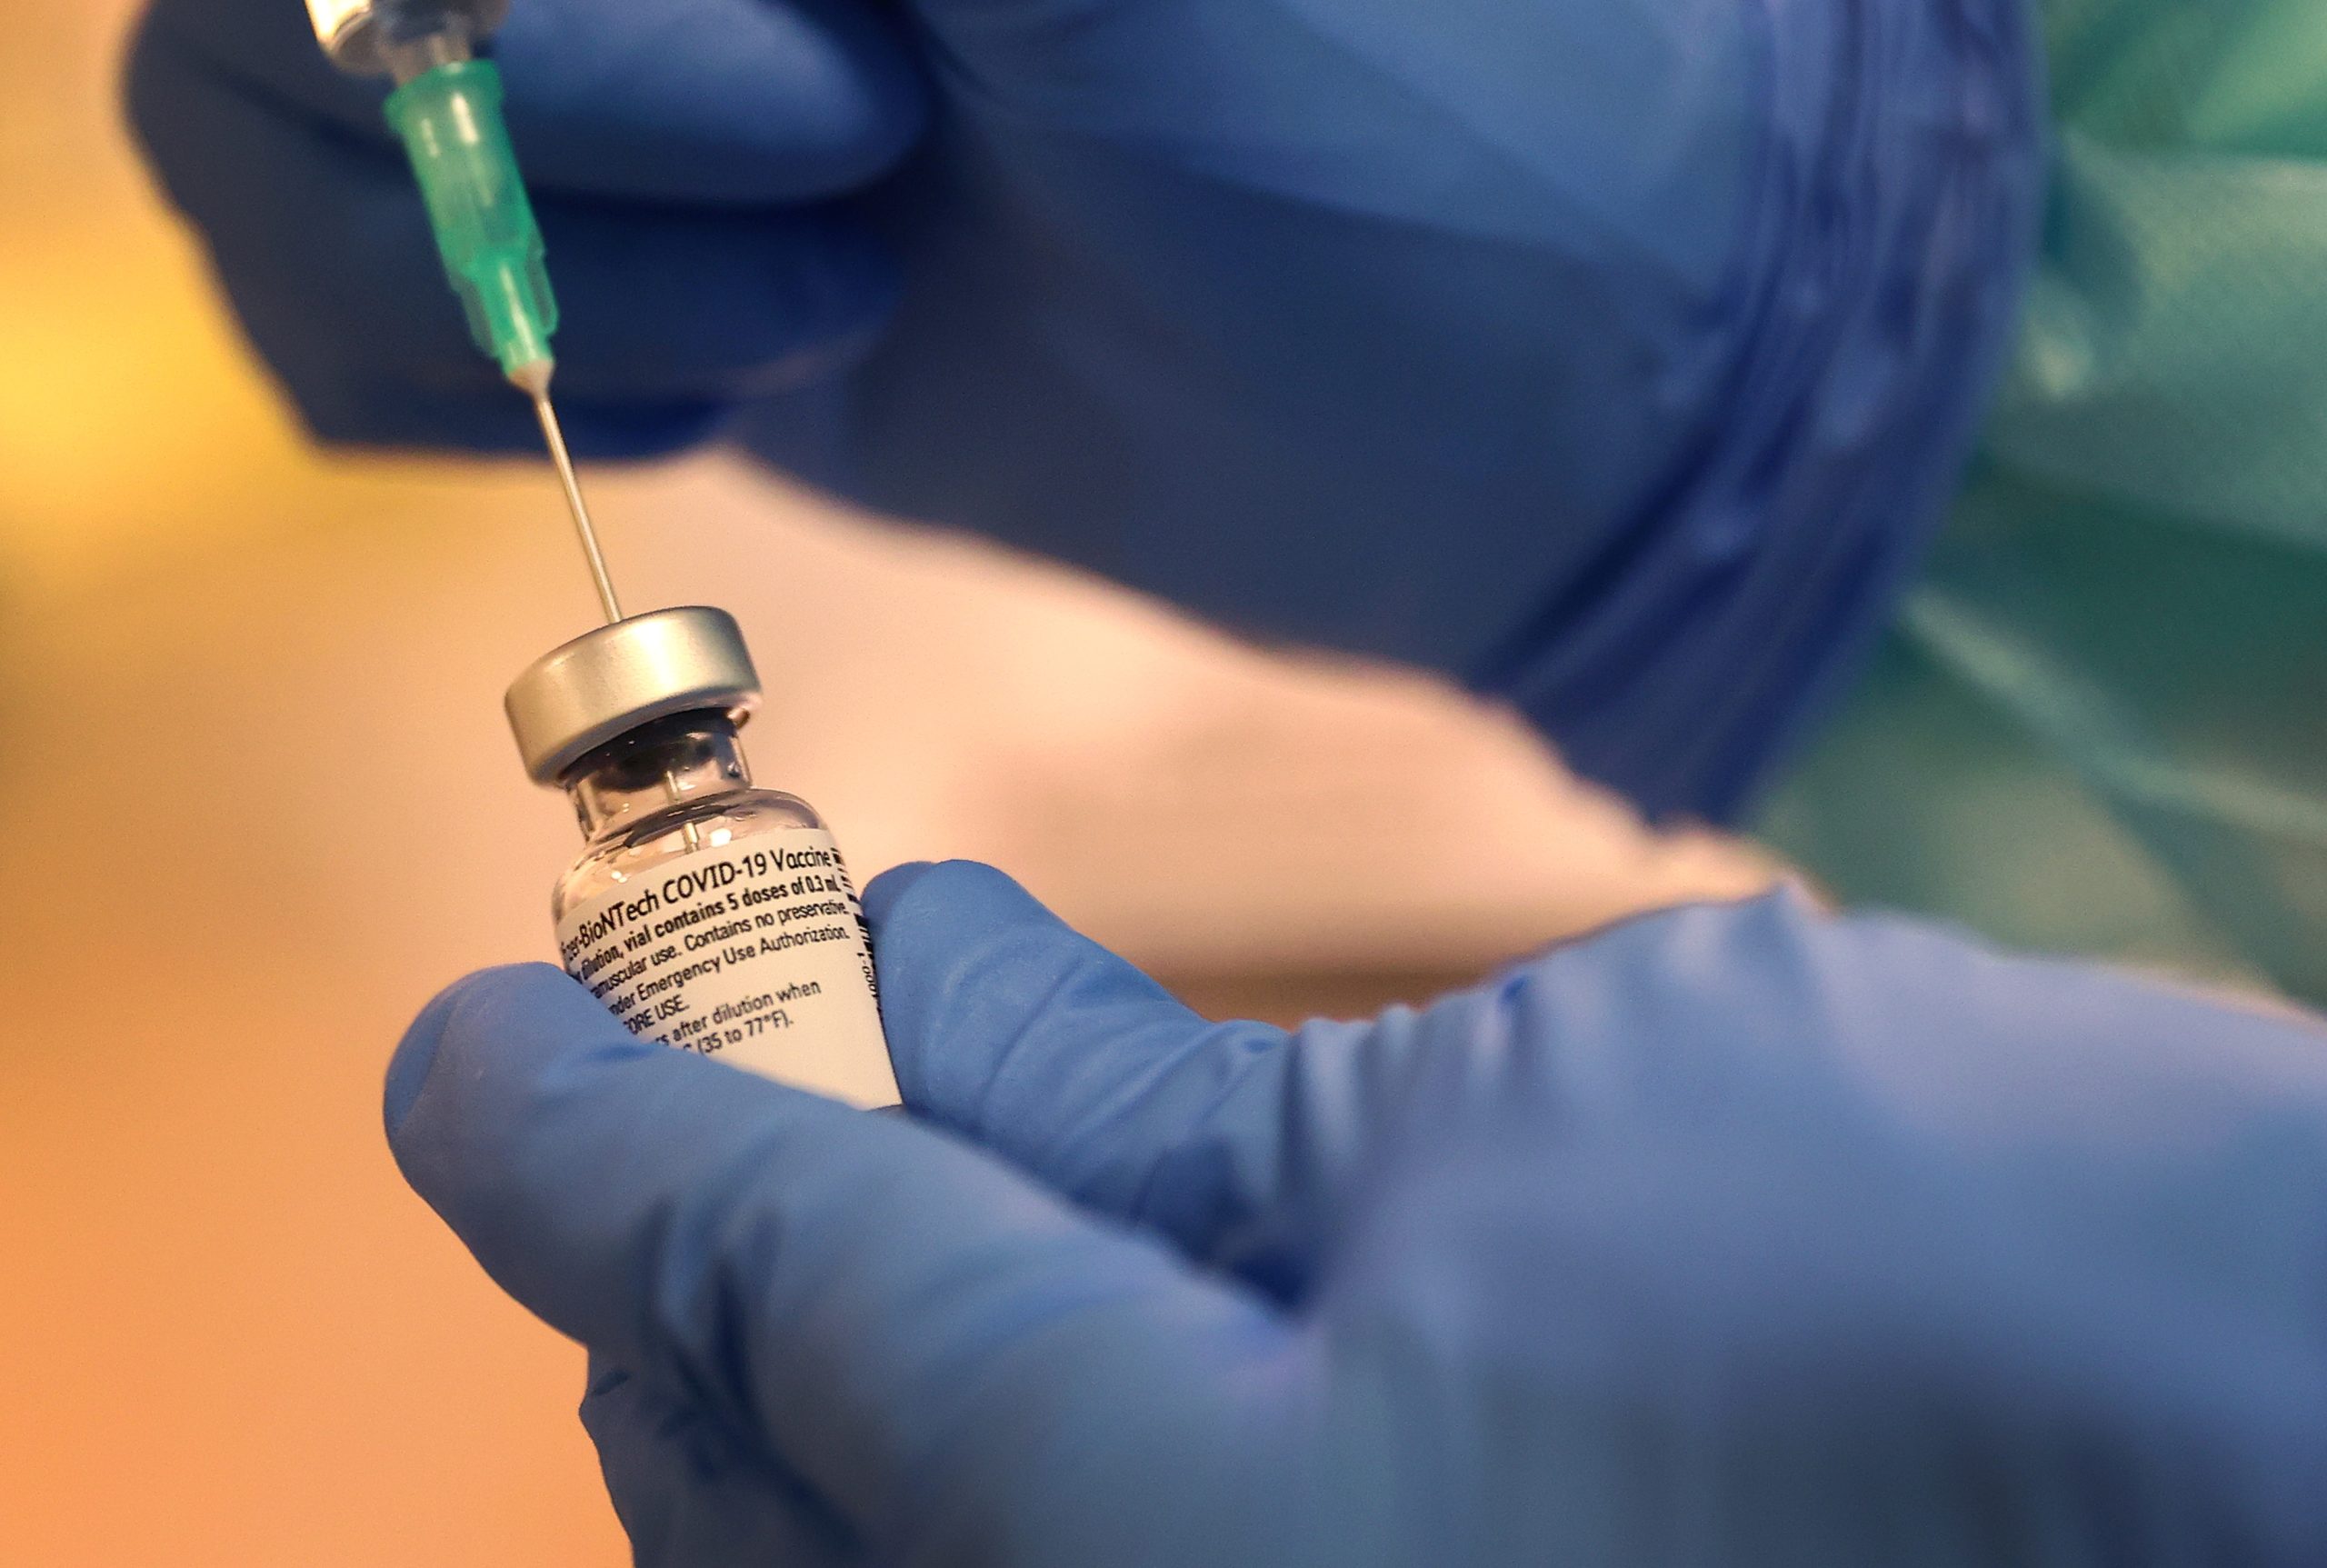 Επίσημο αίτημα της Pfizer στον FDA για τέταρτη δόση! – Θα έρθει και νέο εμβόλιο από Σεπτέμβρη